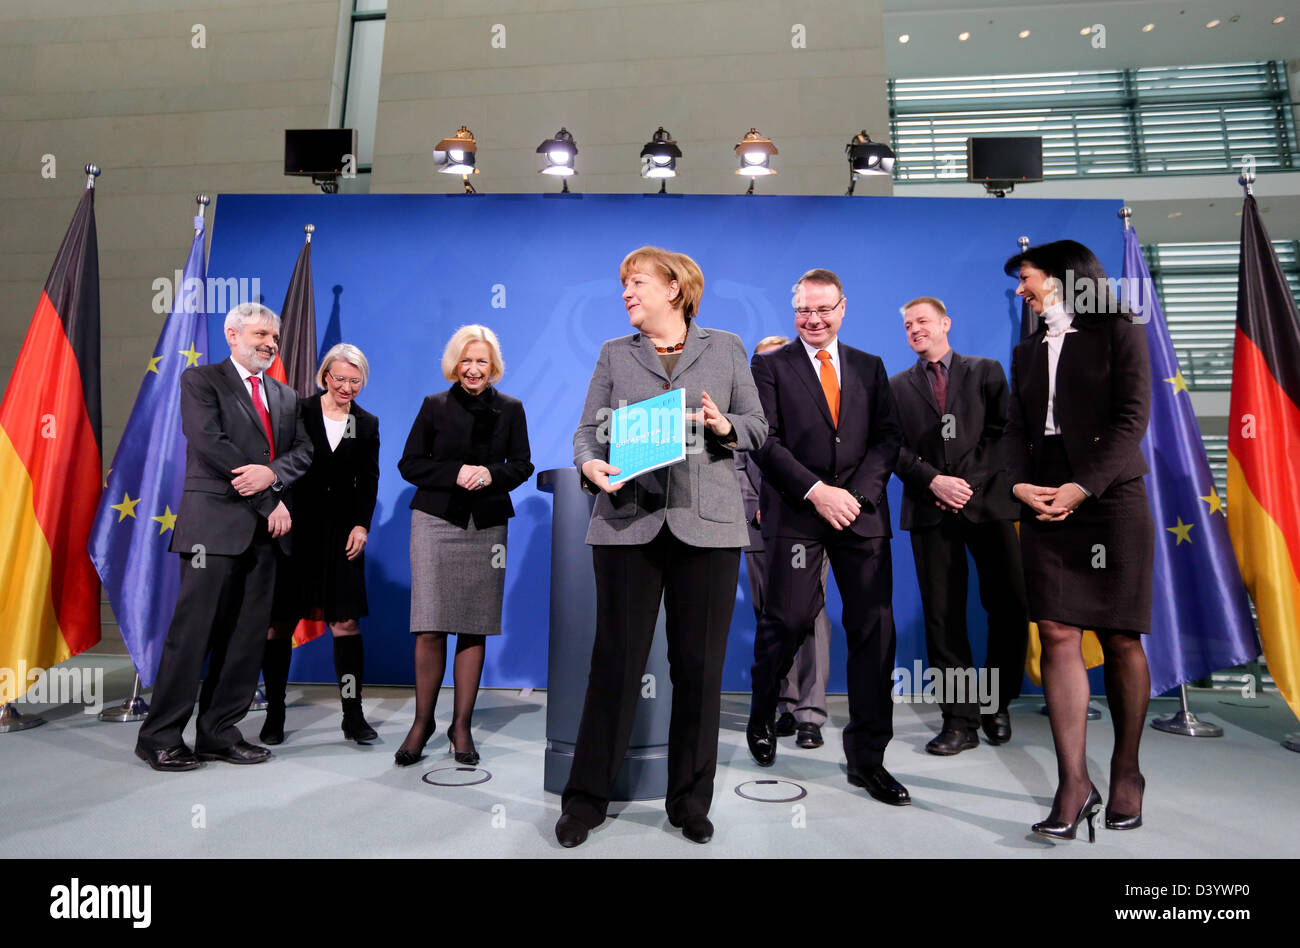 Berlino, Germania. Il 27 febbraio 2013. Il cancelliere tedesco Angela Merkel (CDU) contiene la relazione annuale della Commissione di esperti per la ricerca e l'innovazione (EFI) presso la cancelleria federale a Berlino, Germania, 27 febbraio 2013. Accanto al suo stand dei membri della commissione di esperti Monika Schnitzer (L-R), Patrick Llerena, Ministro tedesco per la ricerca e l'istruzione Johanna Wanka (CDU), Alexander Gerybadze, presidente di EFI Dietmar Harhoff, Christoph Boehringer e Uschi Backes Gellner. Foto: KAY NIETFELD/dpa/Alamy Live News Foto Stock